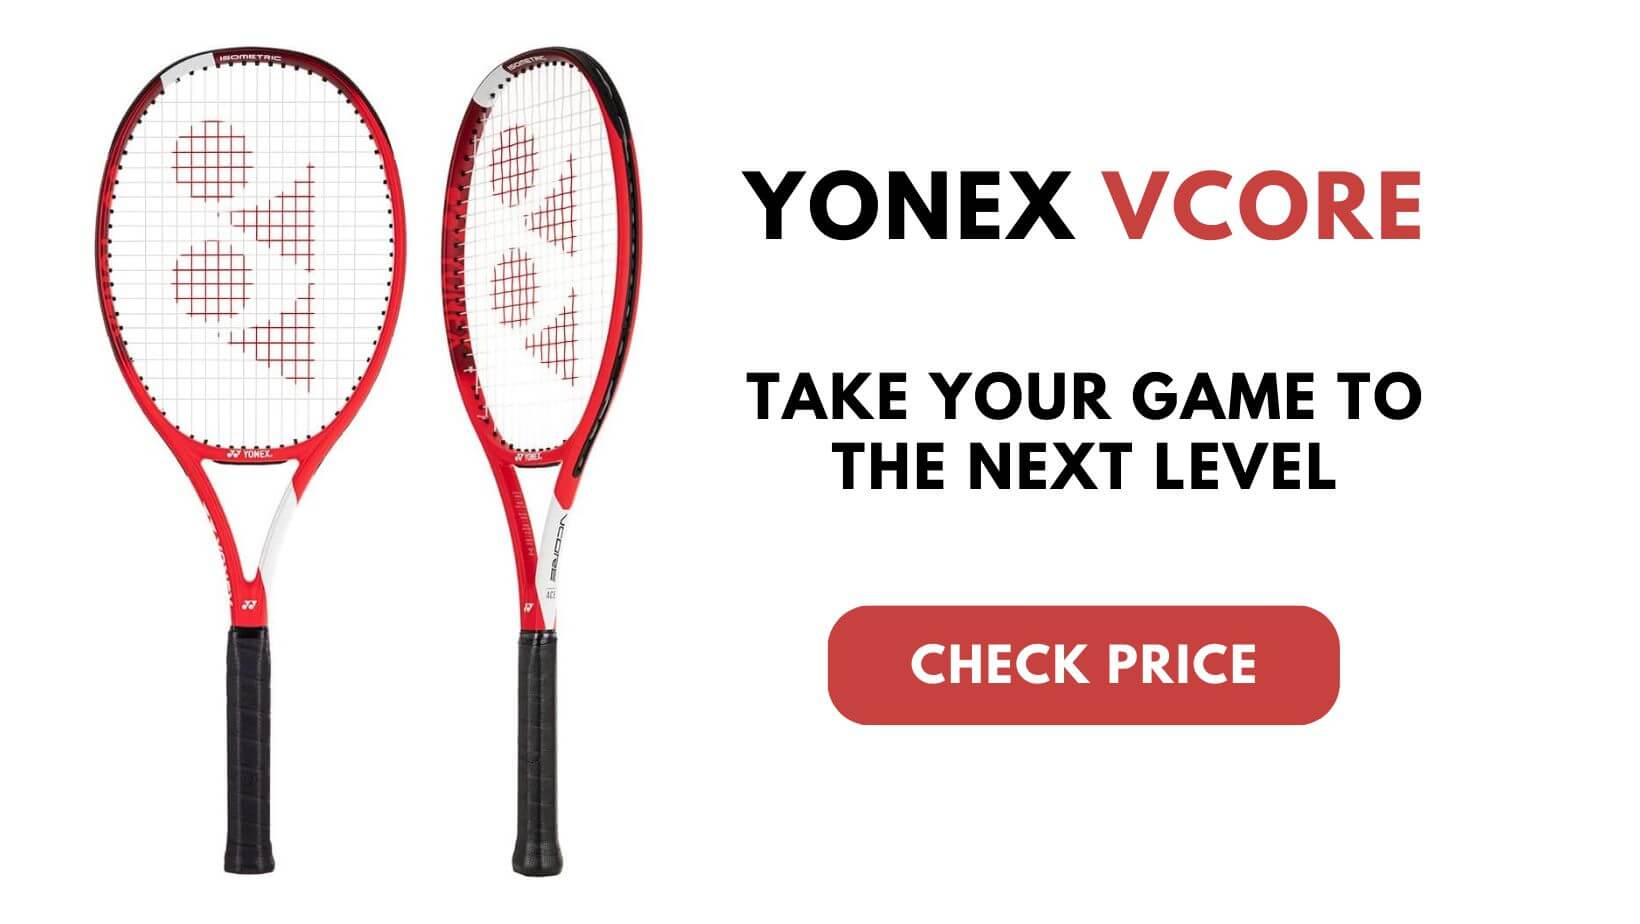 Yonex Vcore